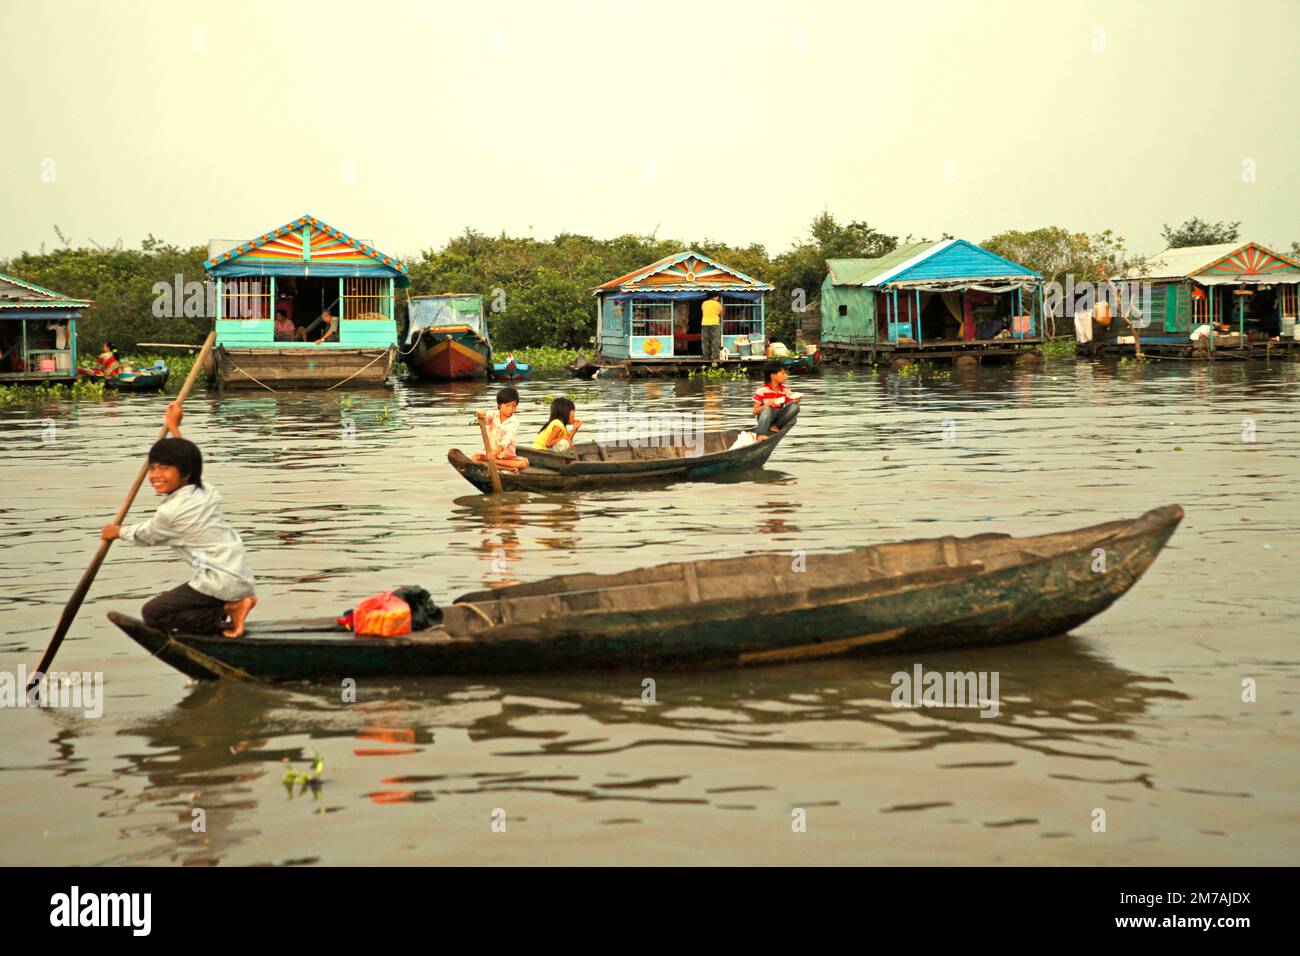 Niños viajando en barcos en un fondo de casas flotantes de un pueblo flotante en Tonle Sap, el lago de agua dulce más grande de Camboya, en esta foto de 2013. Desde al menos noviembre de 2021, las autoridades camboyanas han estado tratando de proteger más estrechamente los recursos naturales de la zona, incluidos los santuarios de peces, según informó el Phnom Penh Post el 3 de enero de 2023. Los delitos pesqueros en la zona se reprimirán de nuevo en 2023, tras las exitosas campañas que llevaron a un aumento de la producción pesquera el año pasado. Foto de stock